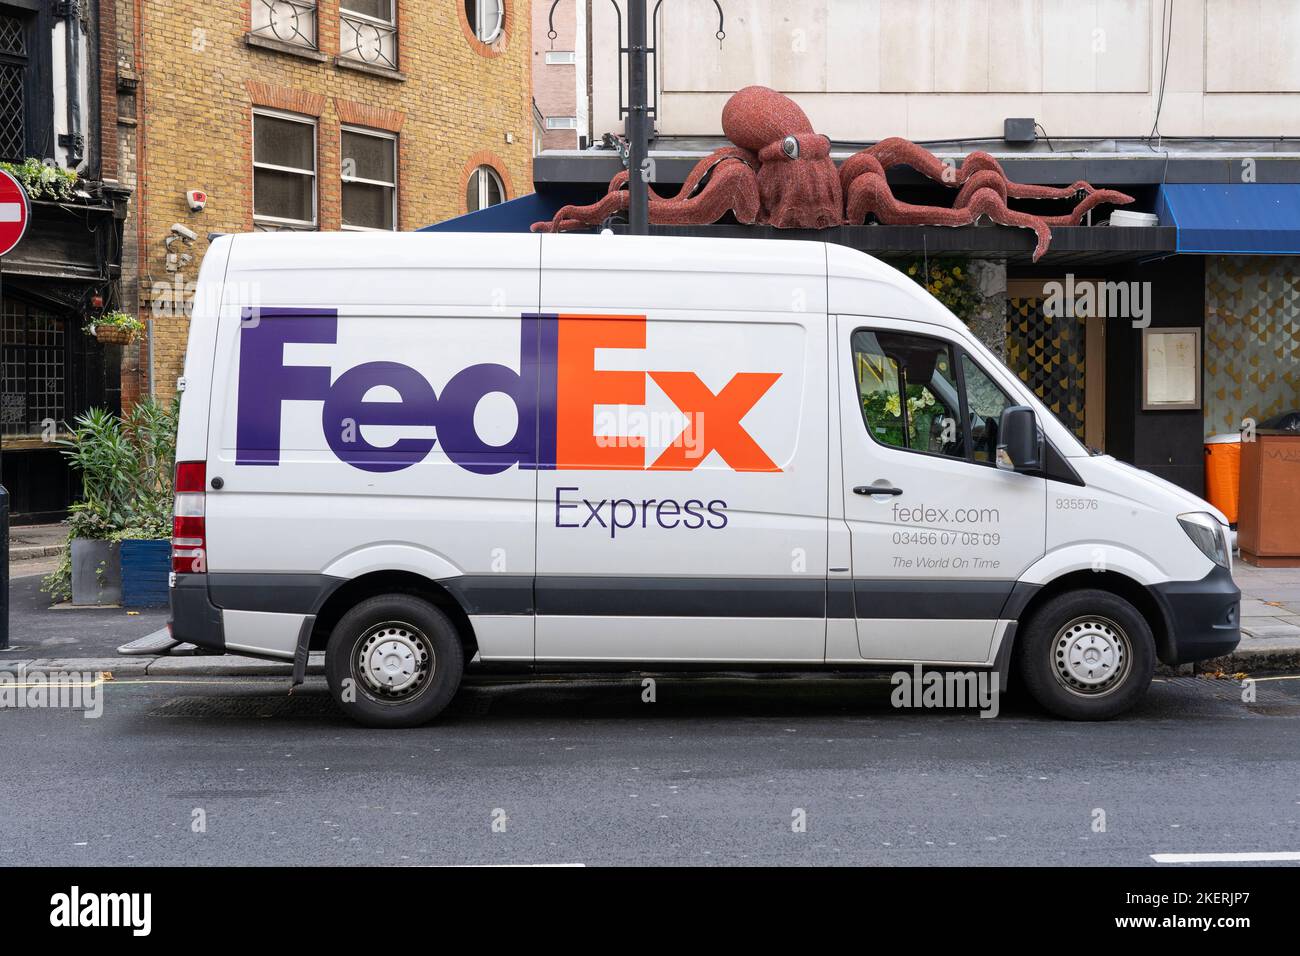 FedEx Lieferwagen liefert ein Paket in London, Großbritannien. Konzept: Kurierdienste, Paketzustellung, Expressversand, Online-Bestellung Stockfoto